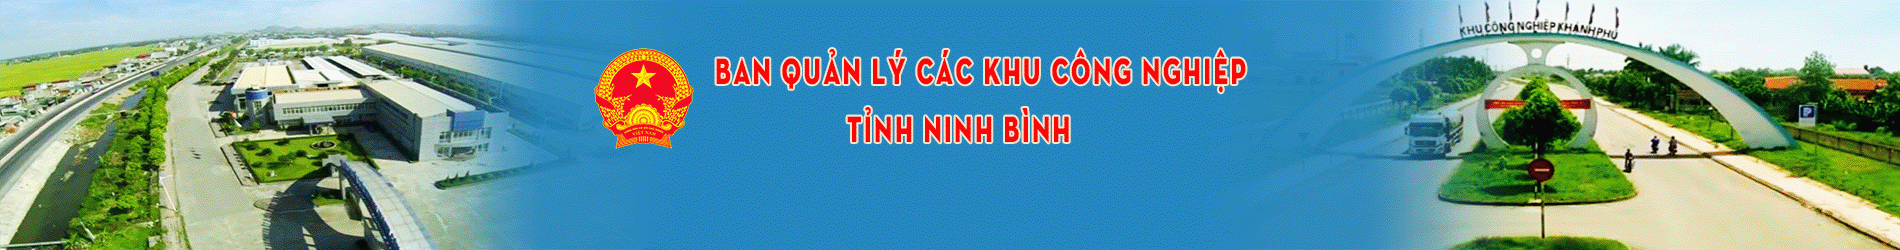 Ban Quản lý các khu công nghiệp tỉnh Ninh Bình